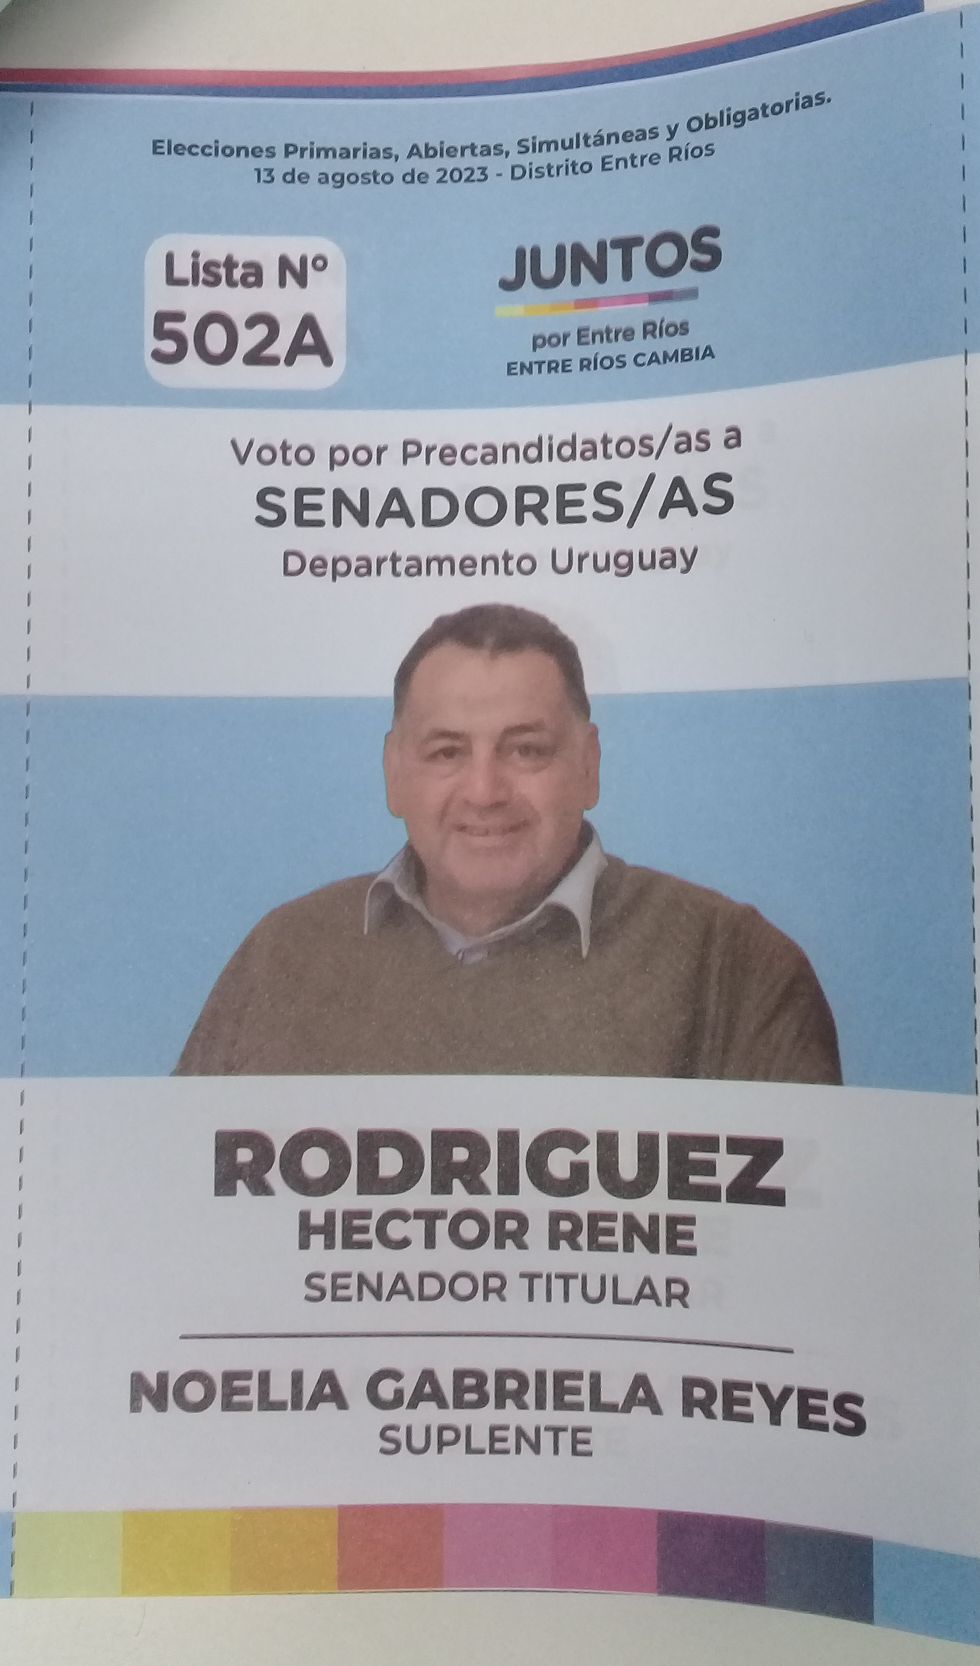 Lista 502A, Juntos por Entre Ríos, encabezada por Héctor René Rodríguez.